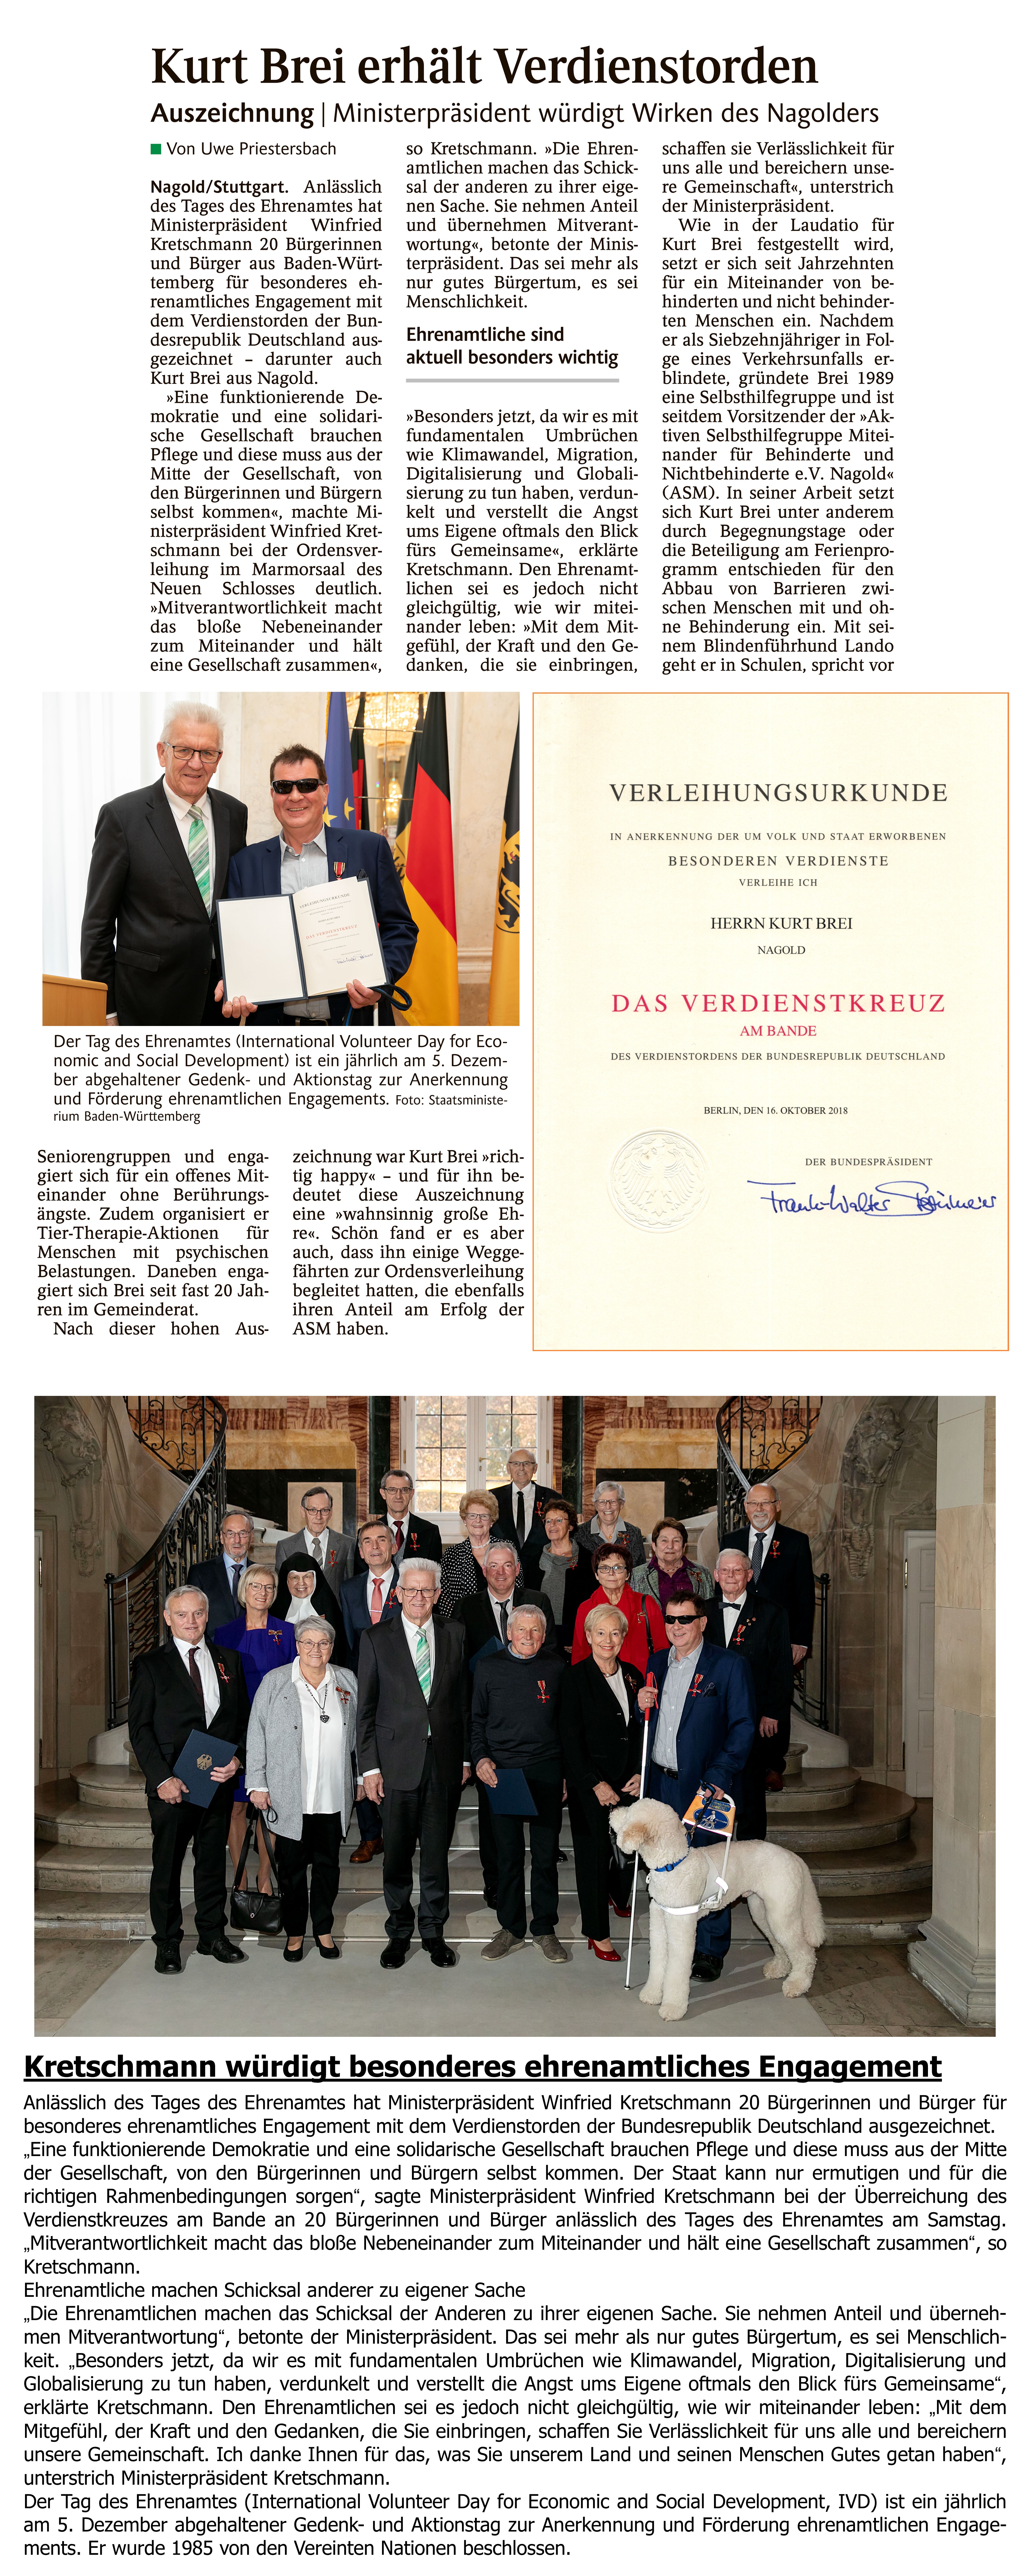 06. Verleihung des undesverdienstkreuzes an Kurt Brei